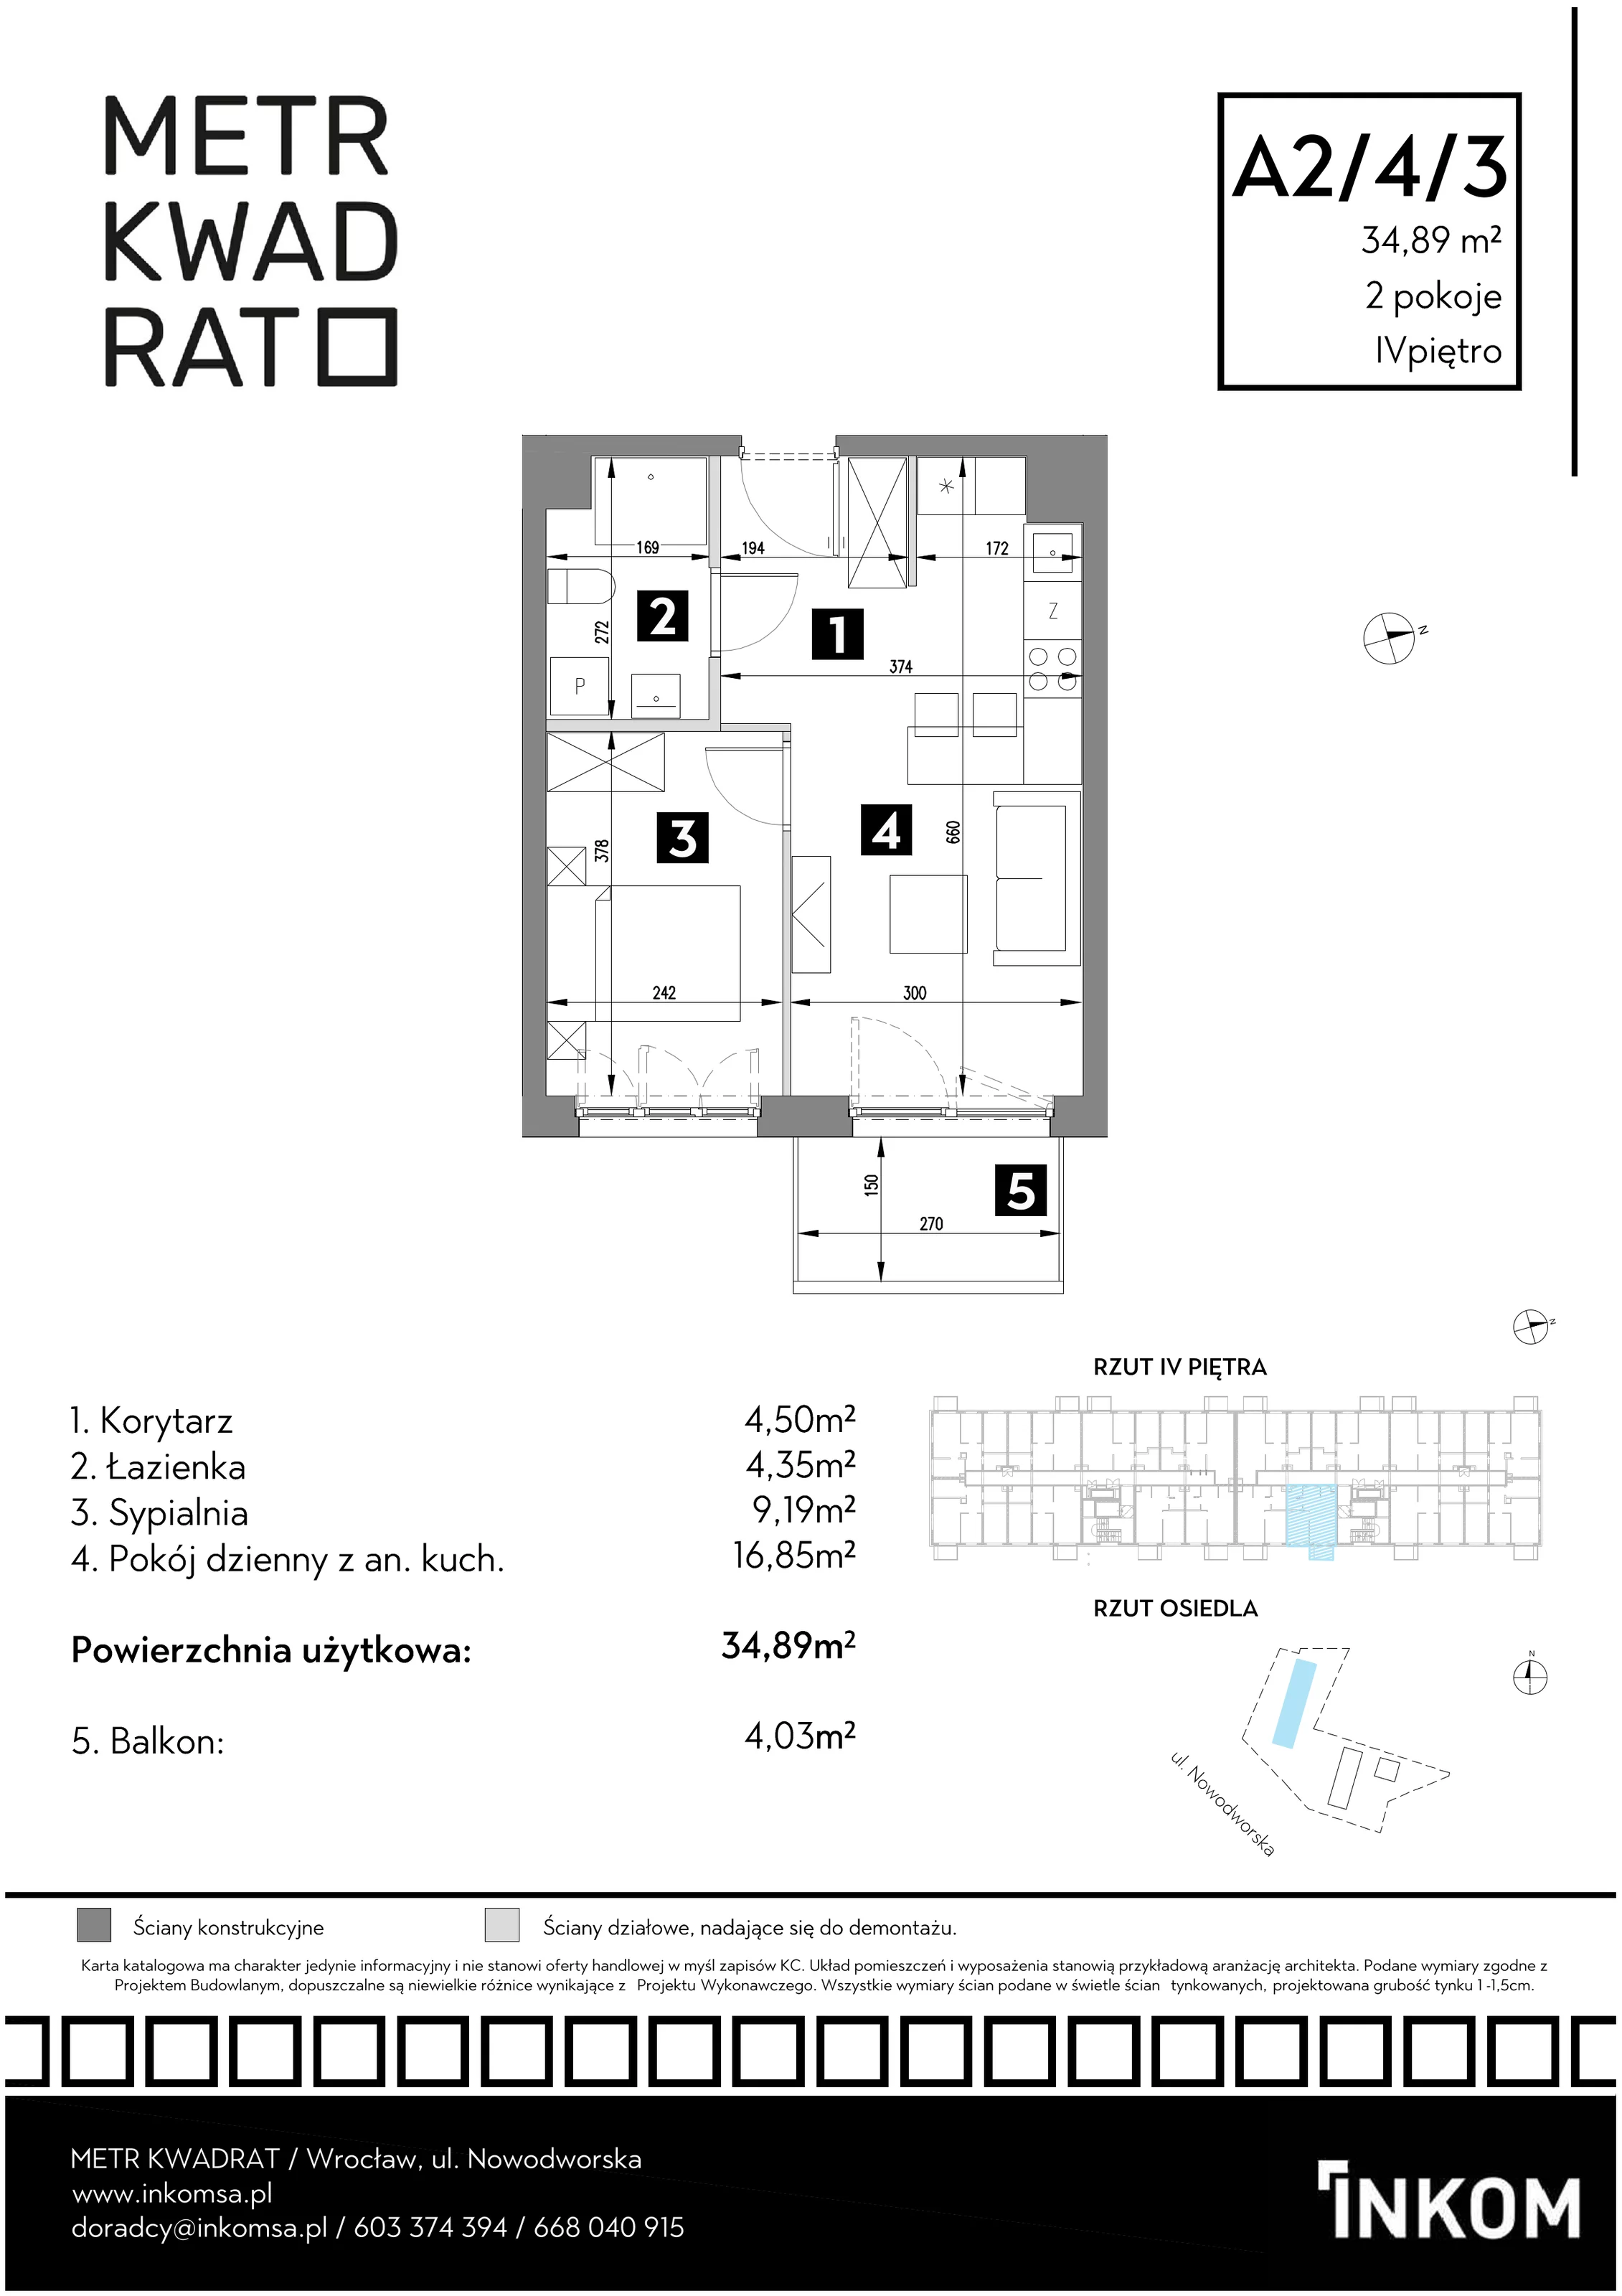 Mieszkanie 34,89 m², piętro 4, oferta nr A2/4/3, Metr Kwadrat, Wrocław, Nowy Dwór, ul. Nowodworska 17B